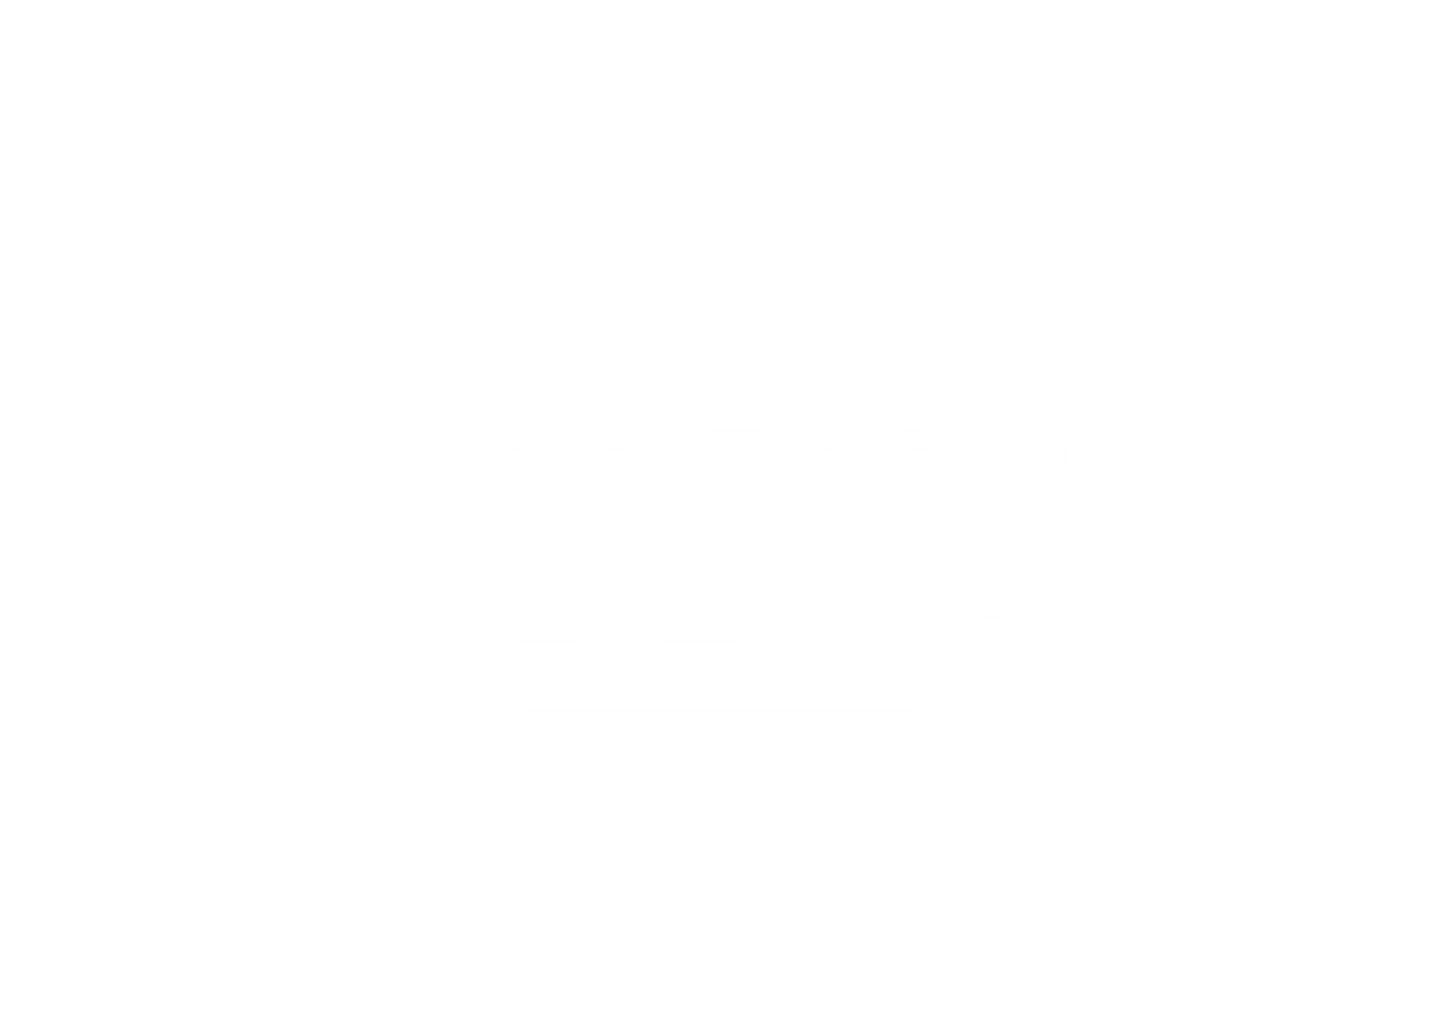 Champagne YSC | Skagen – Skagen Champagne